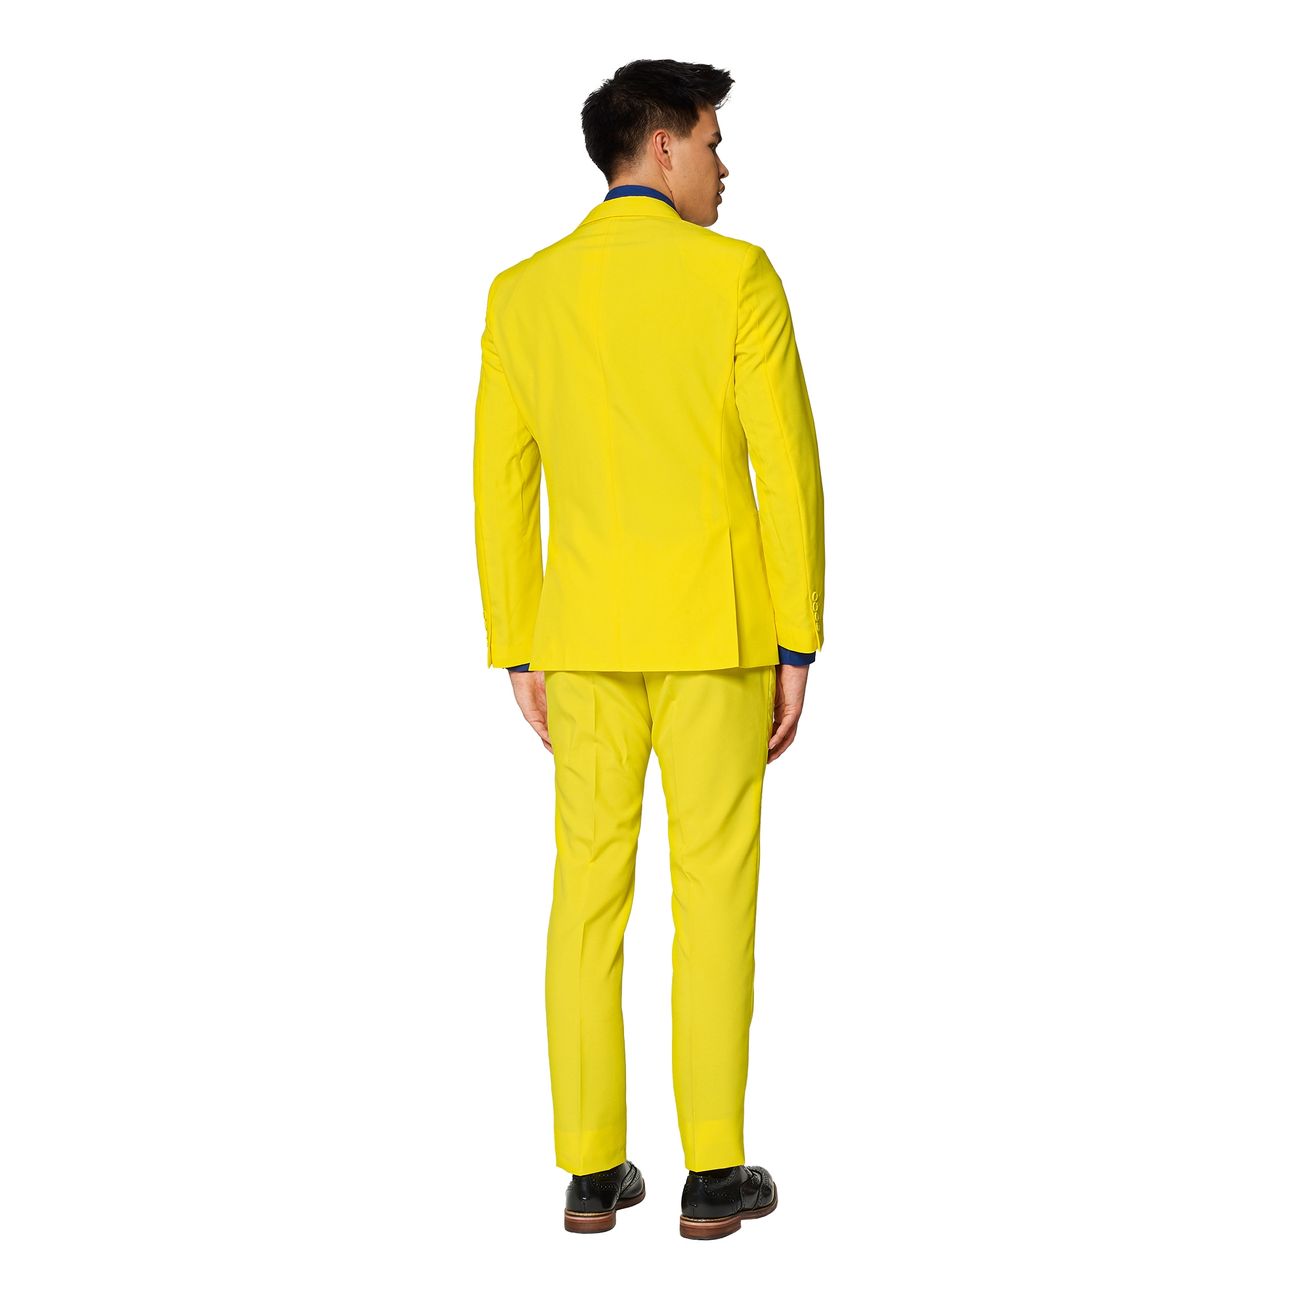 opposuits-yellow-fellow-kostym-30605-7